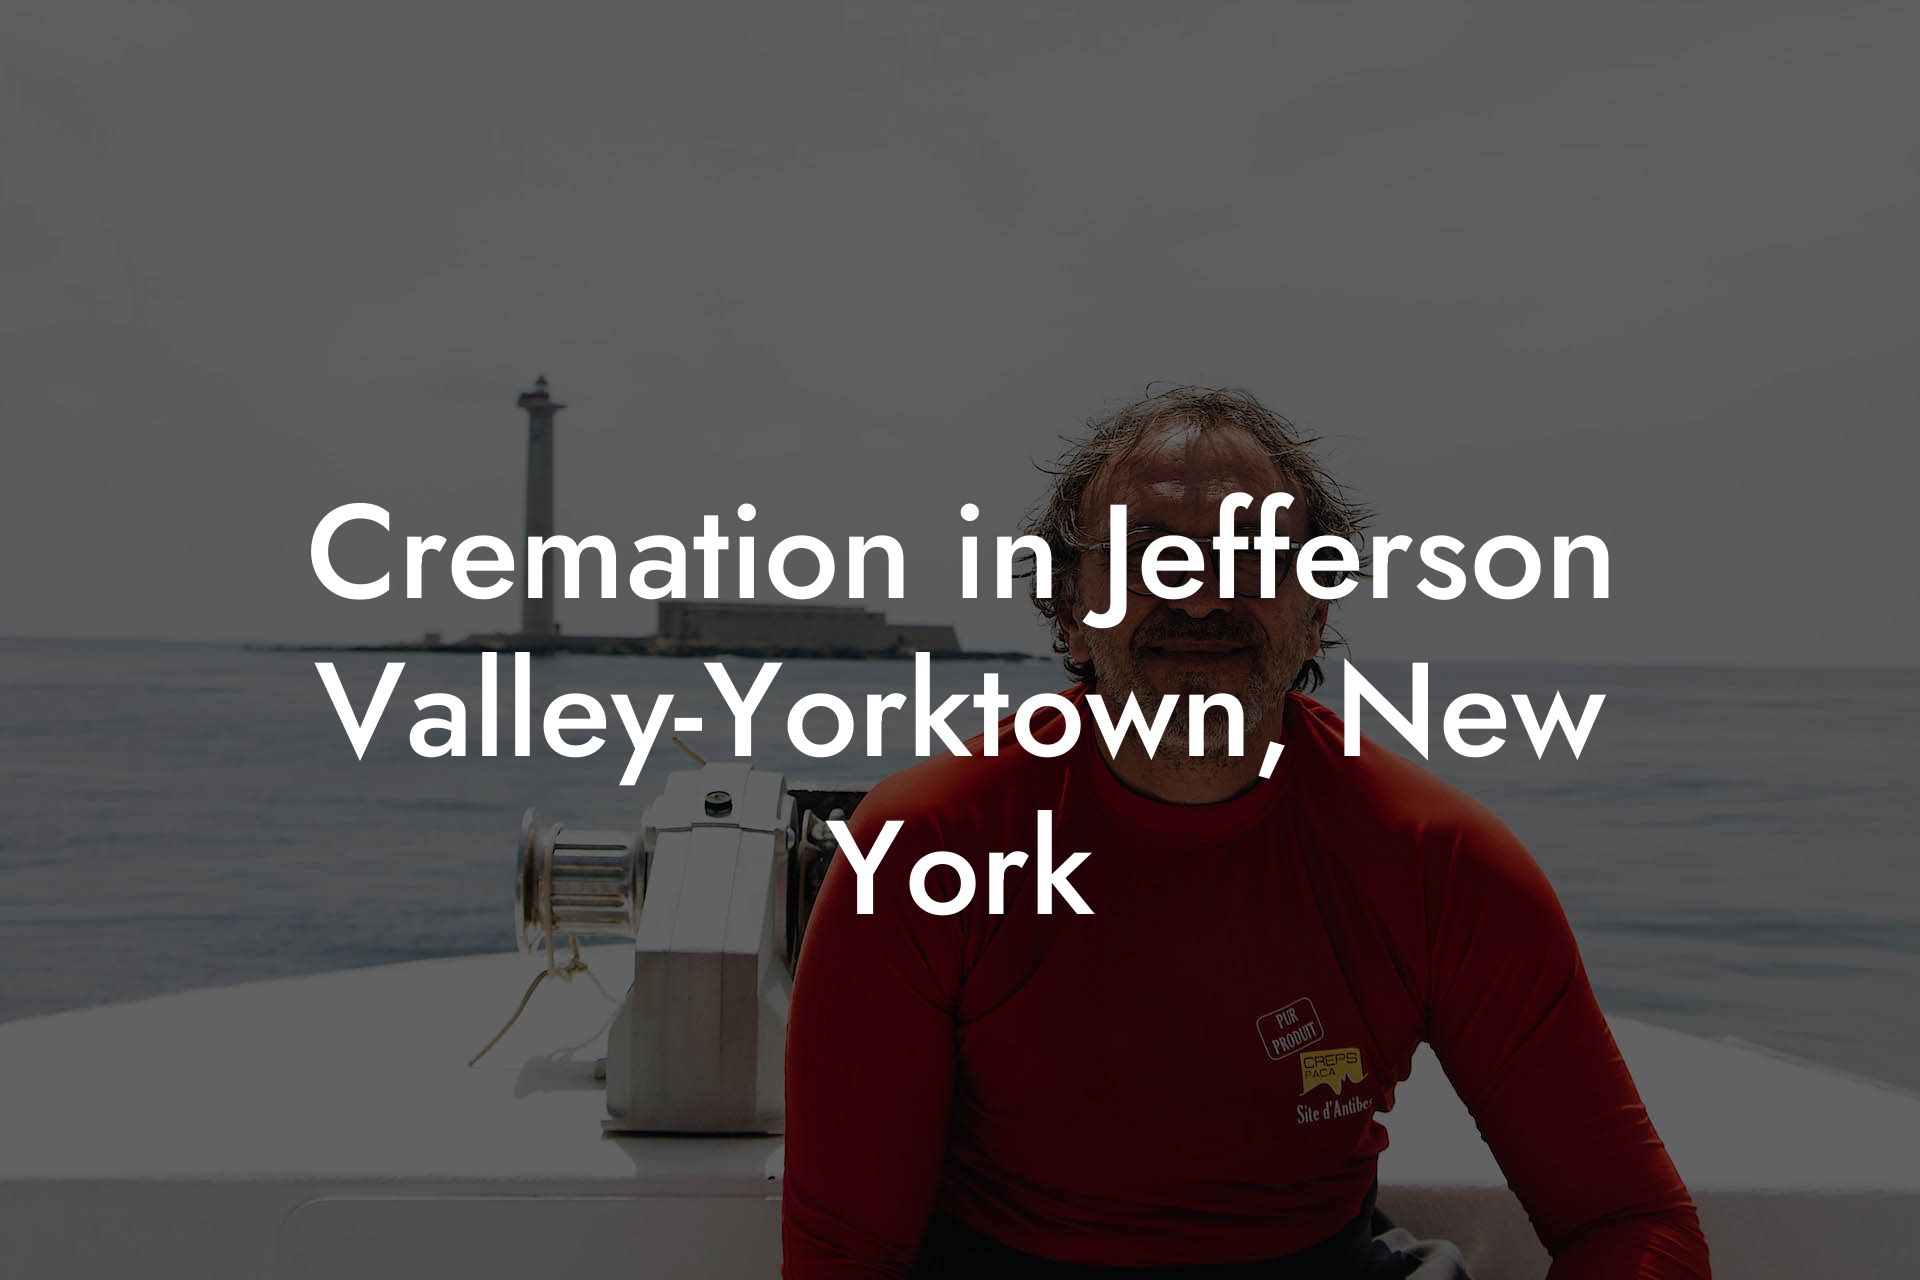 Cremation in Jefferson Valley-Yorktown, New York